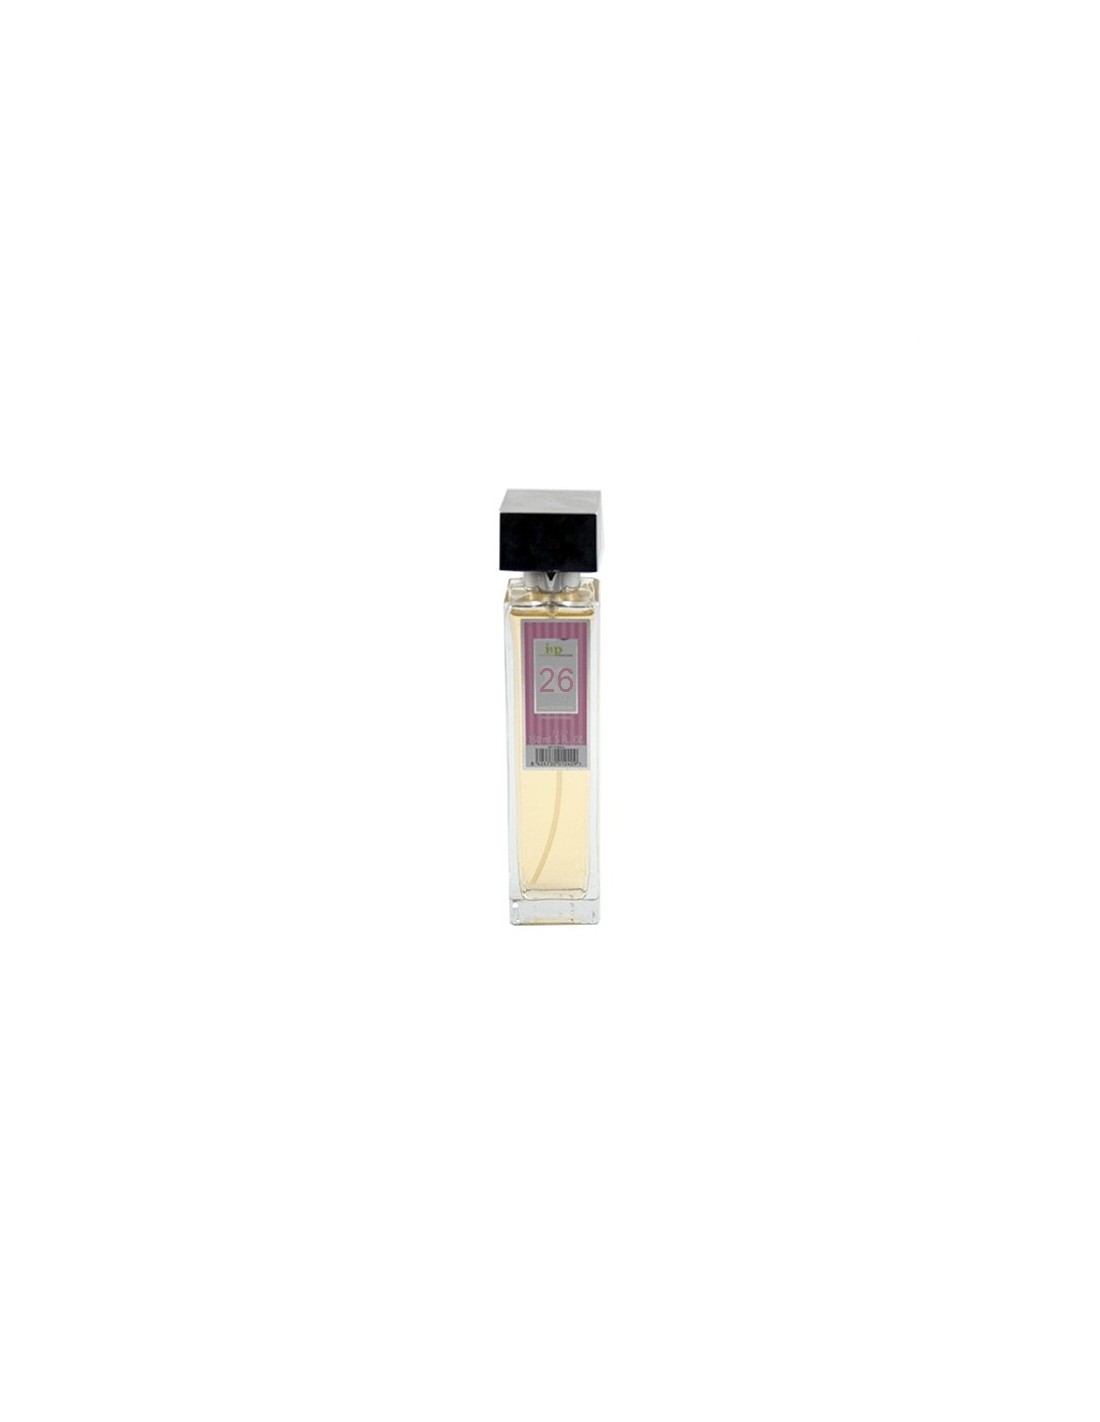 IAP Perfume Mujer N26 150ml